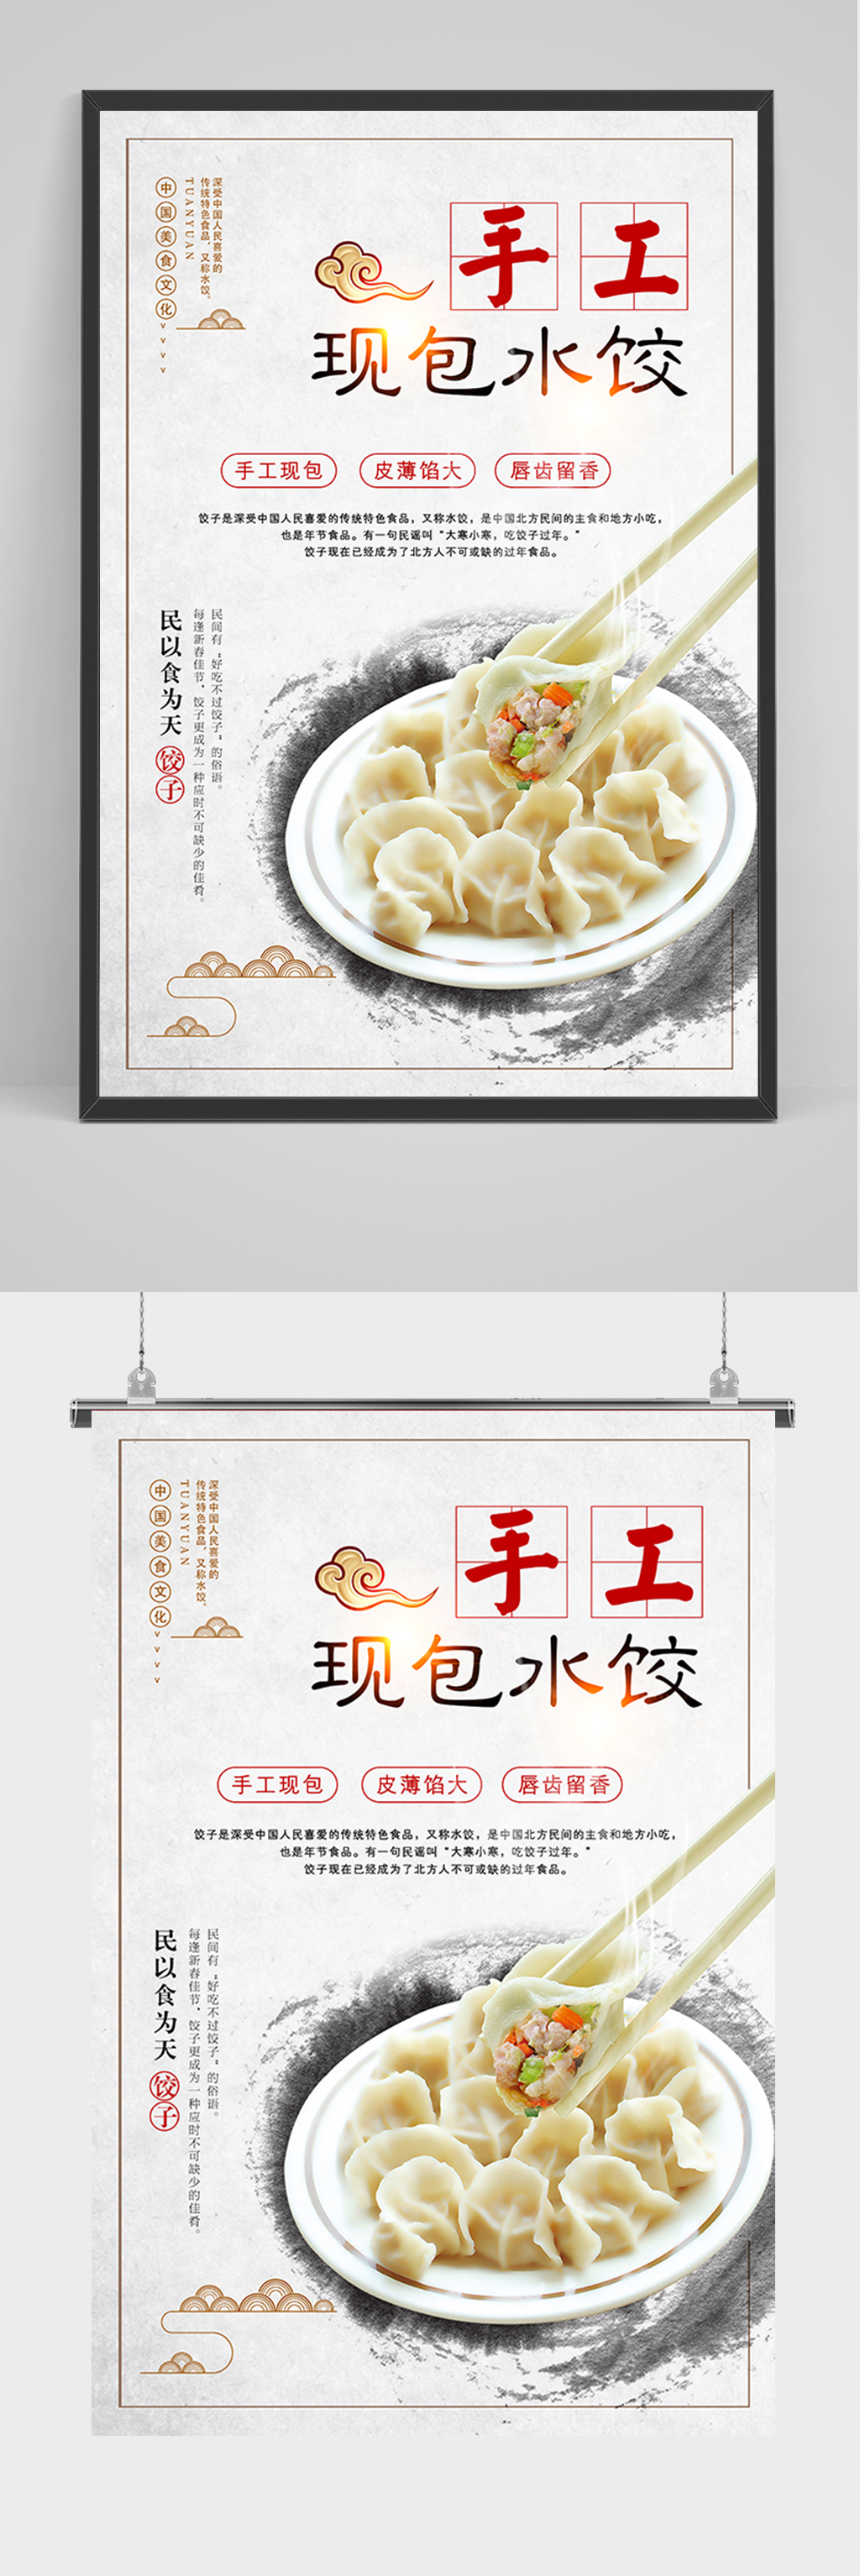 包饺子活动创意名称图片